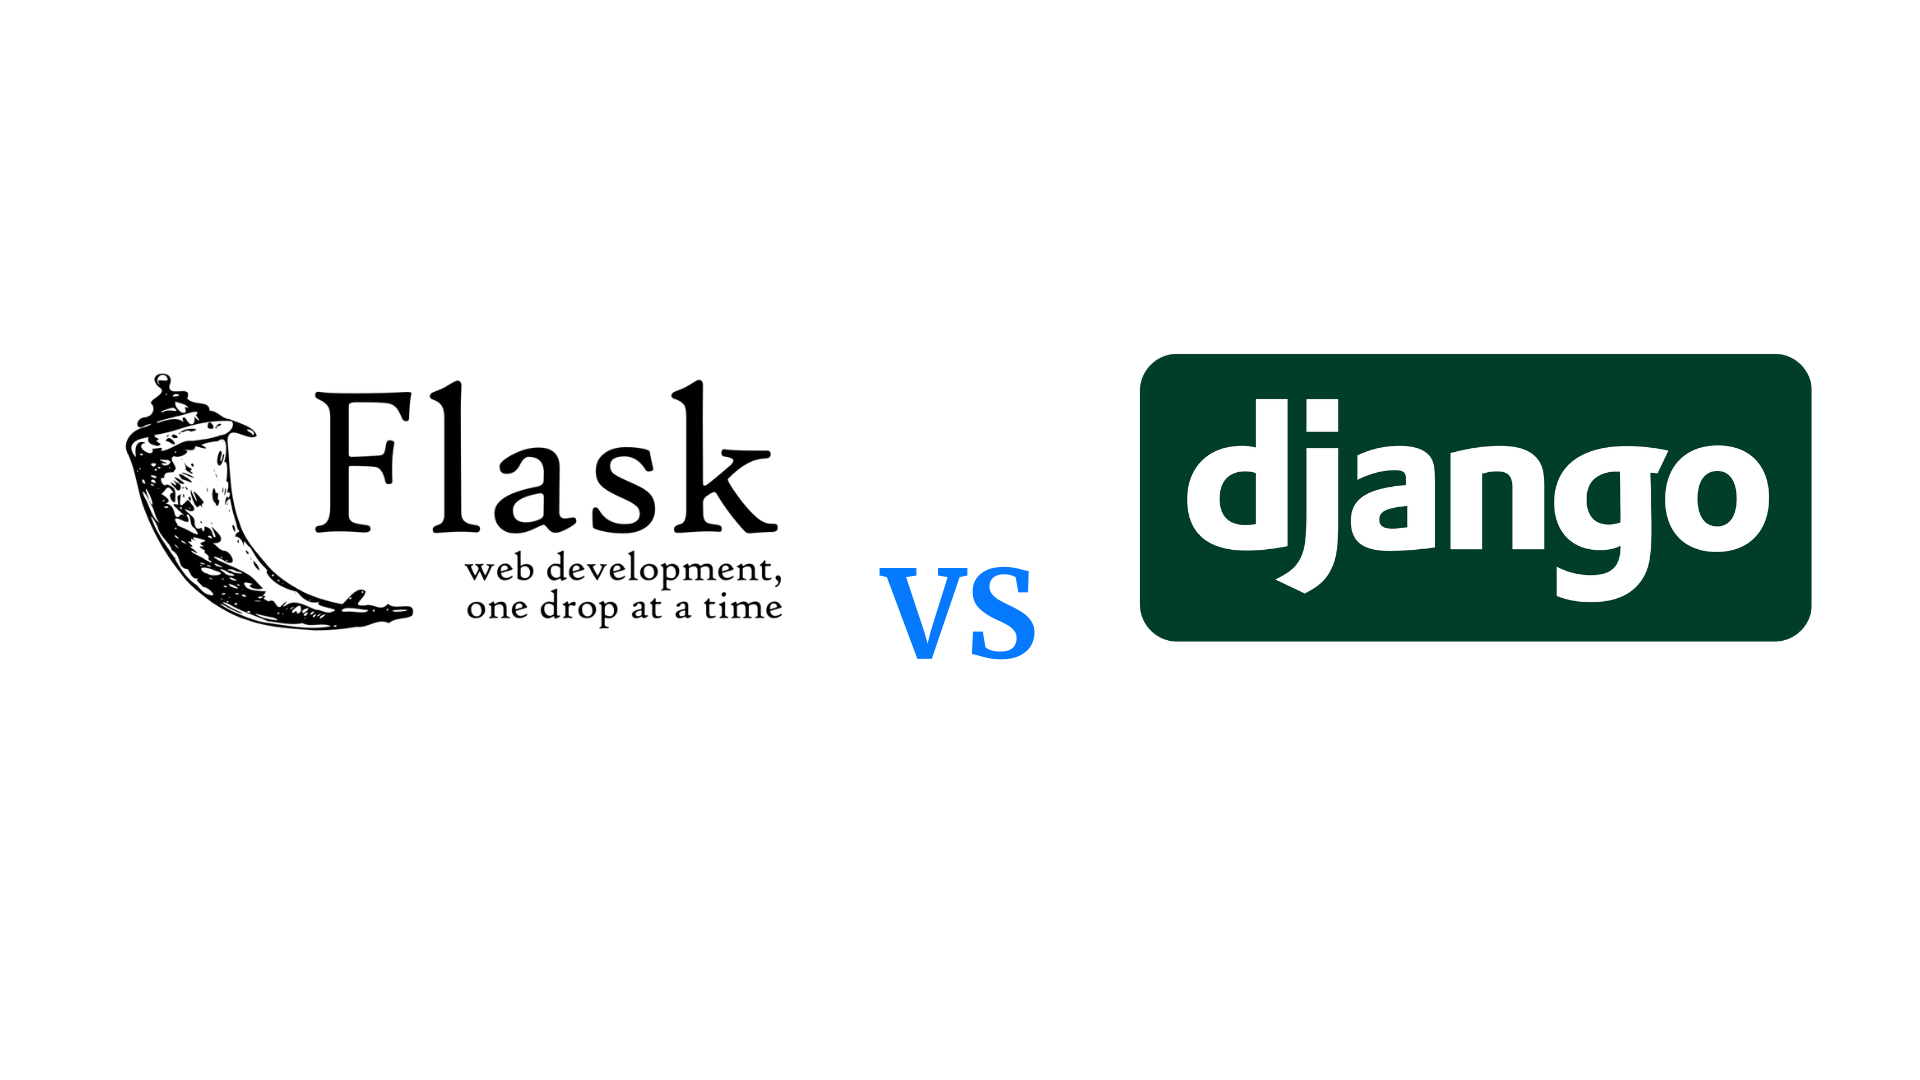 img-flask-vs-django